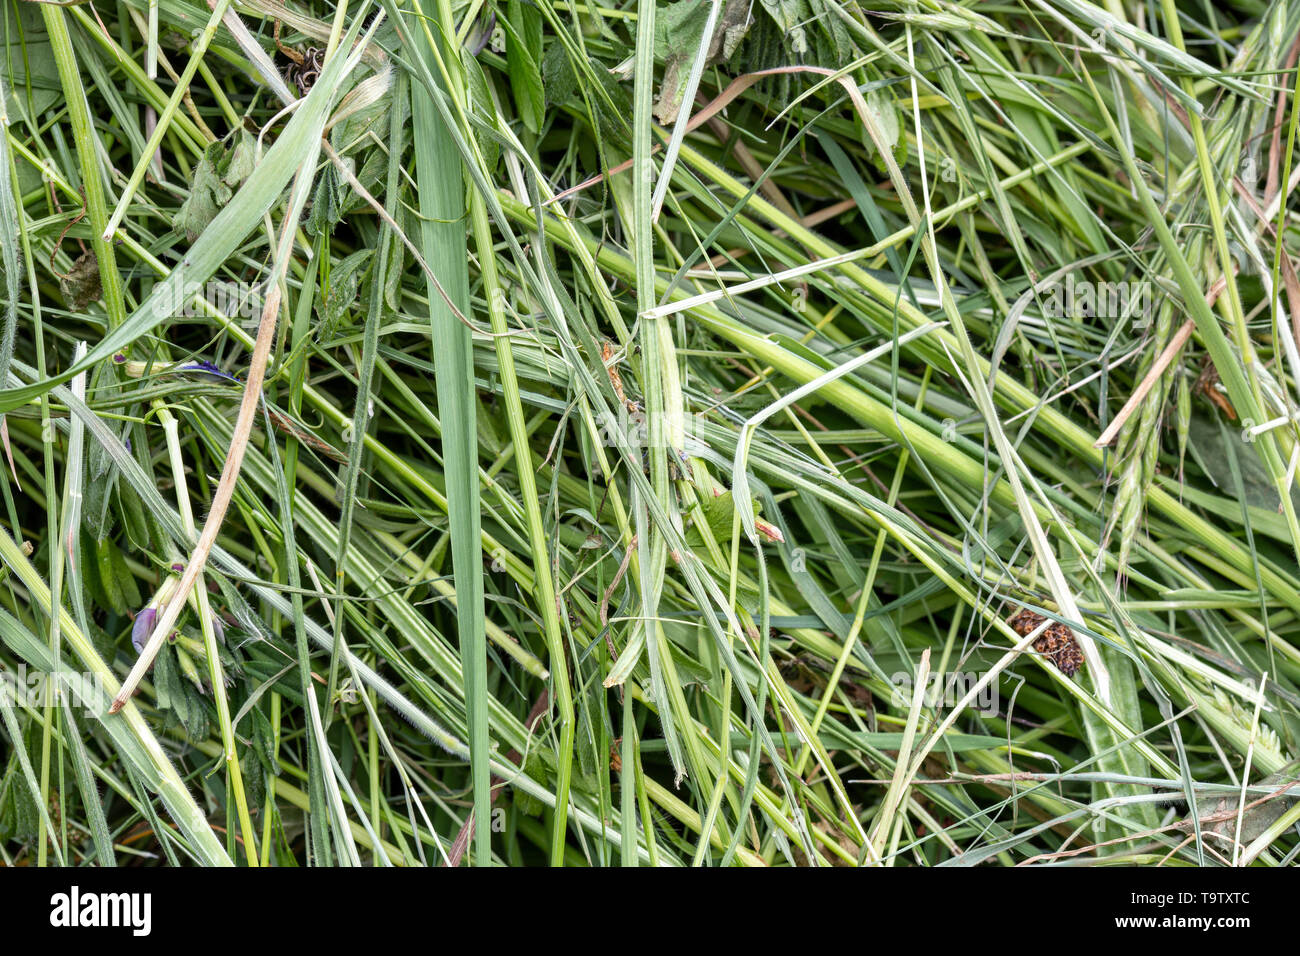 Natürliche Hintergrund Textur: Detail eines Haufens von frisch geschnittenem Gras en Kräuter, die für Laub und Stroh oder andere Farm und Garten verwendet werden können. Stockfoto